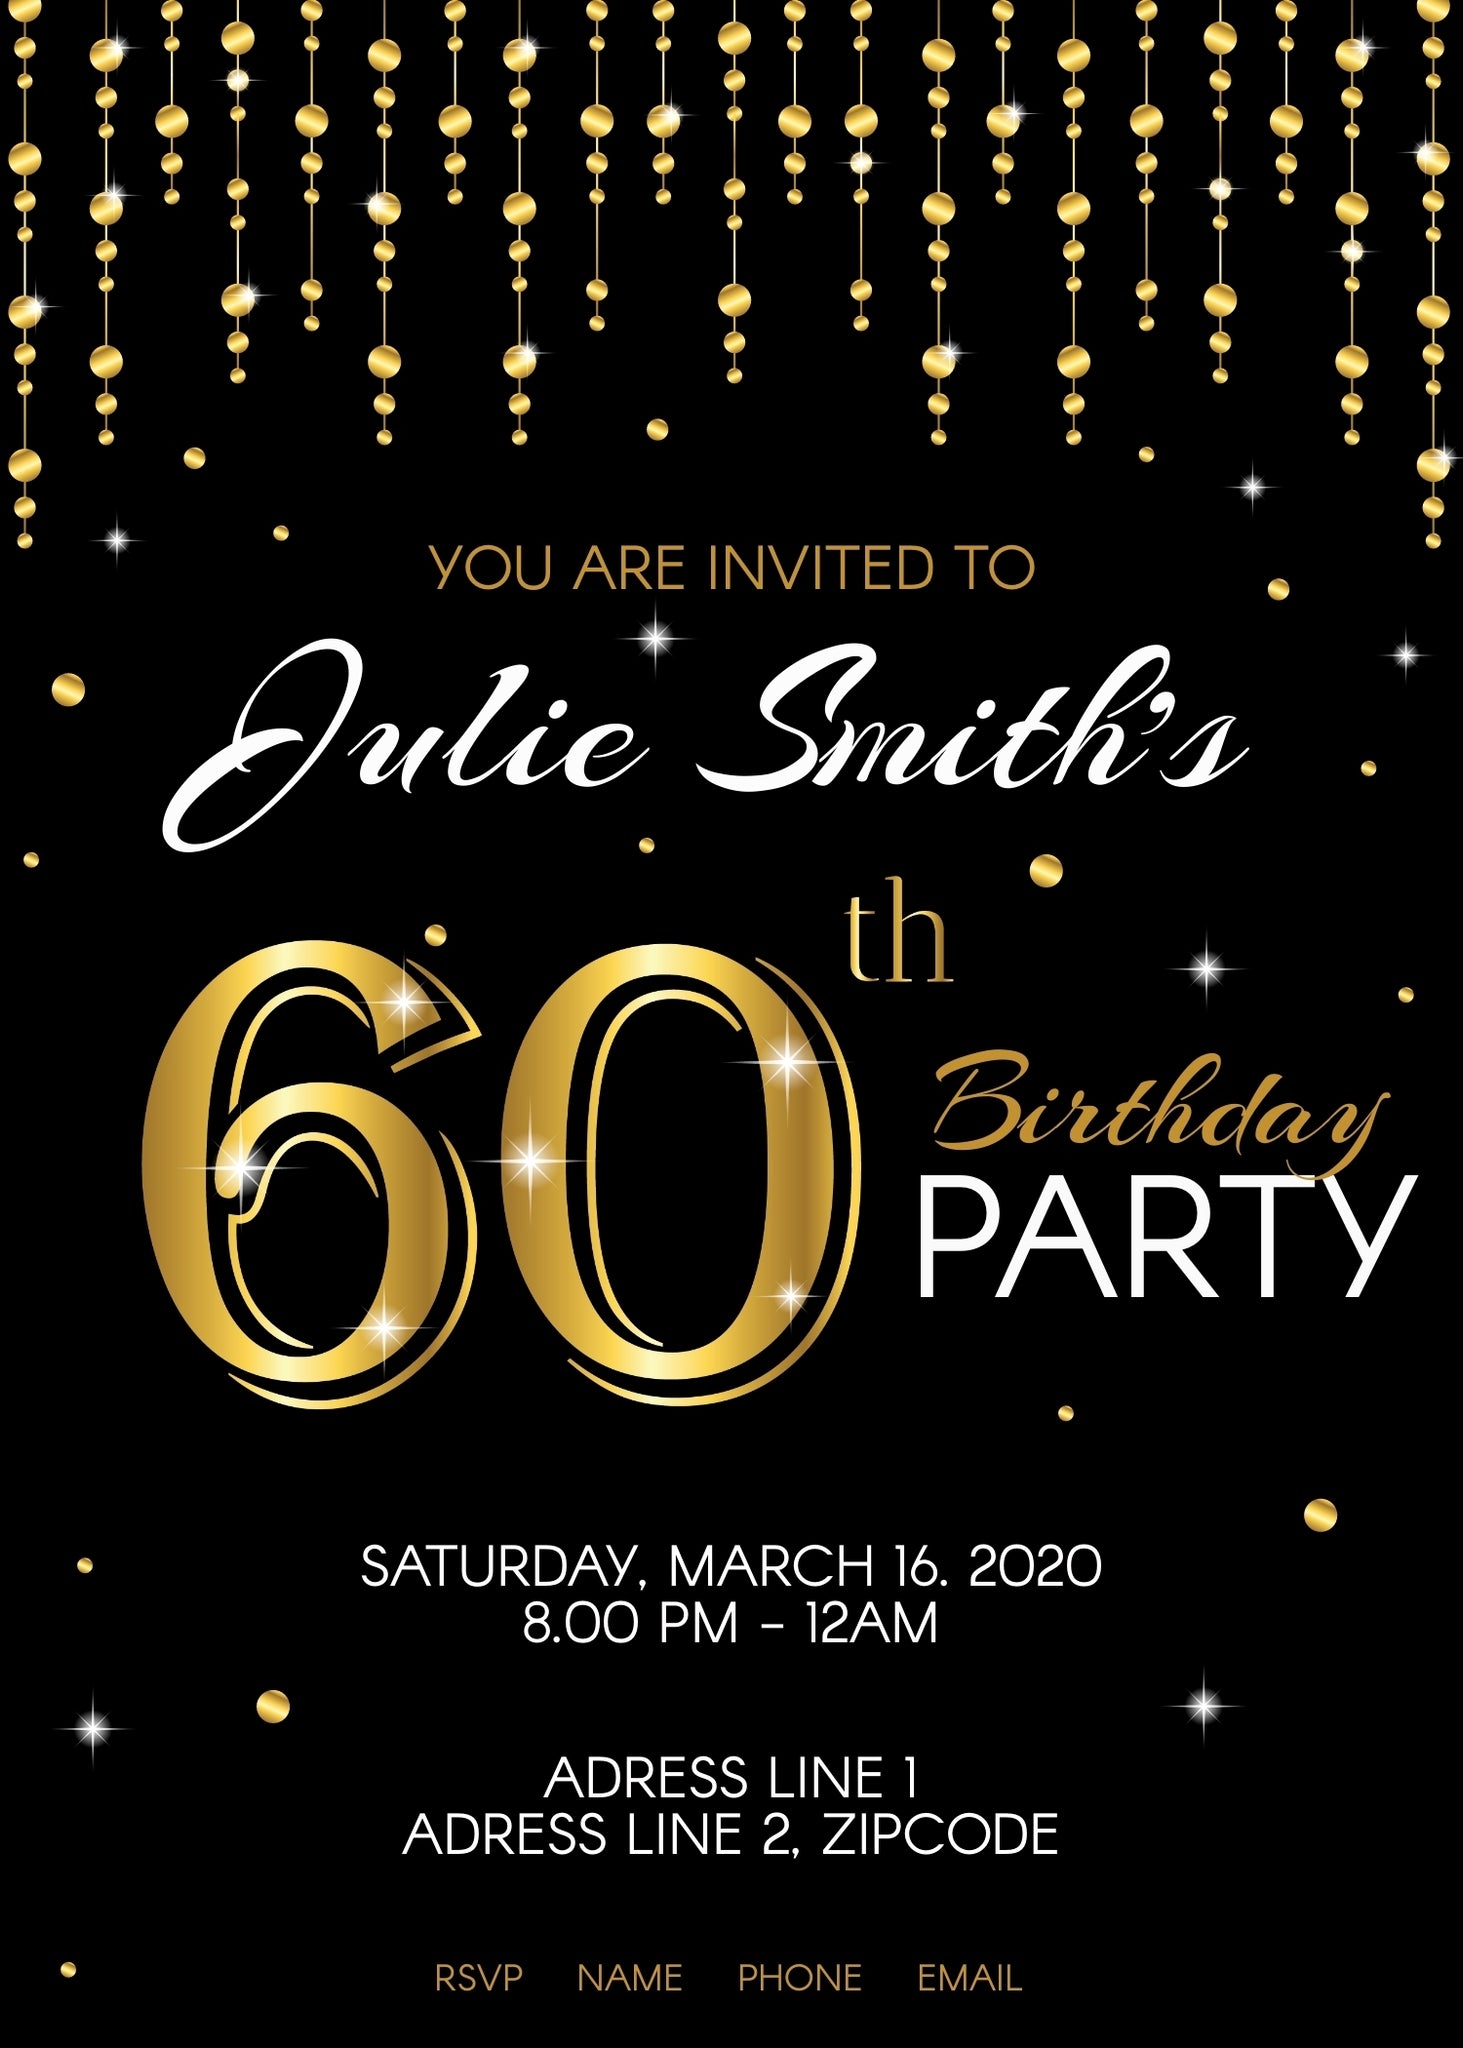 60th-birthday-party-invitation-classic-design-funtastic-idea